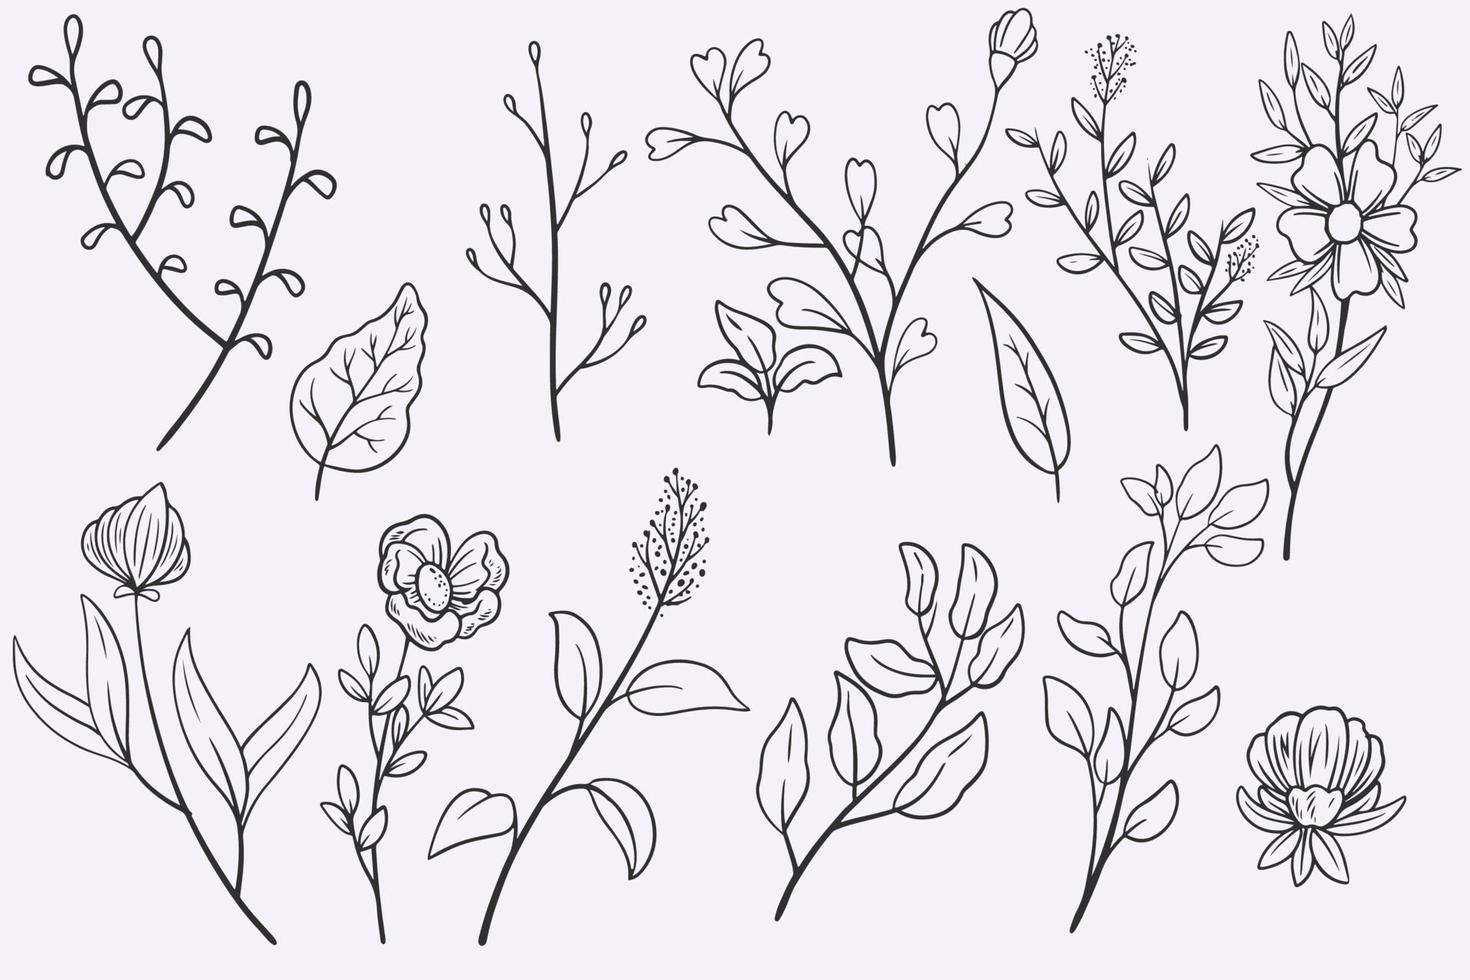 fleur feuilles doodle jeu d'illustration vectorielle dessinés à la main vecteur